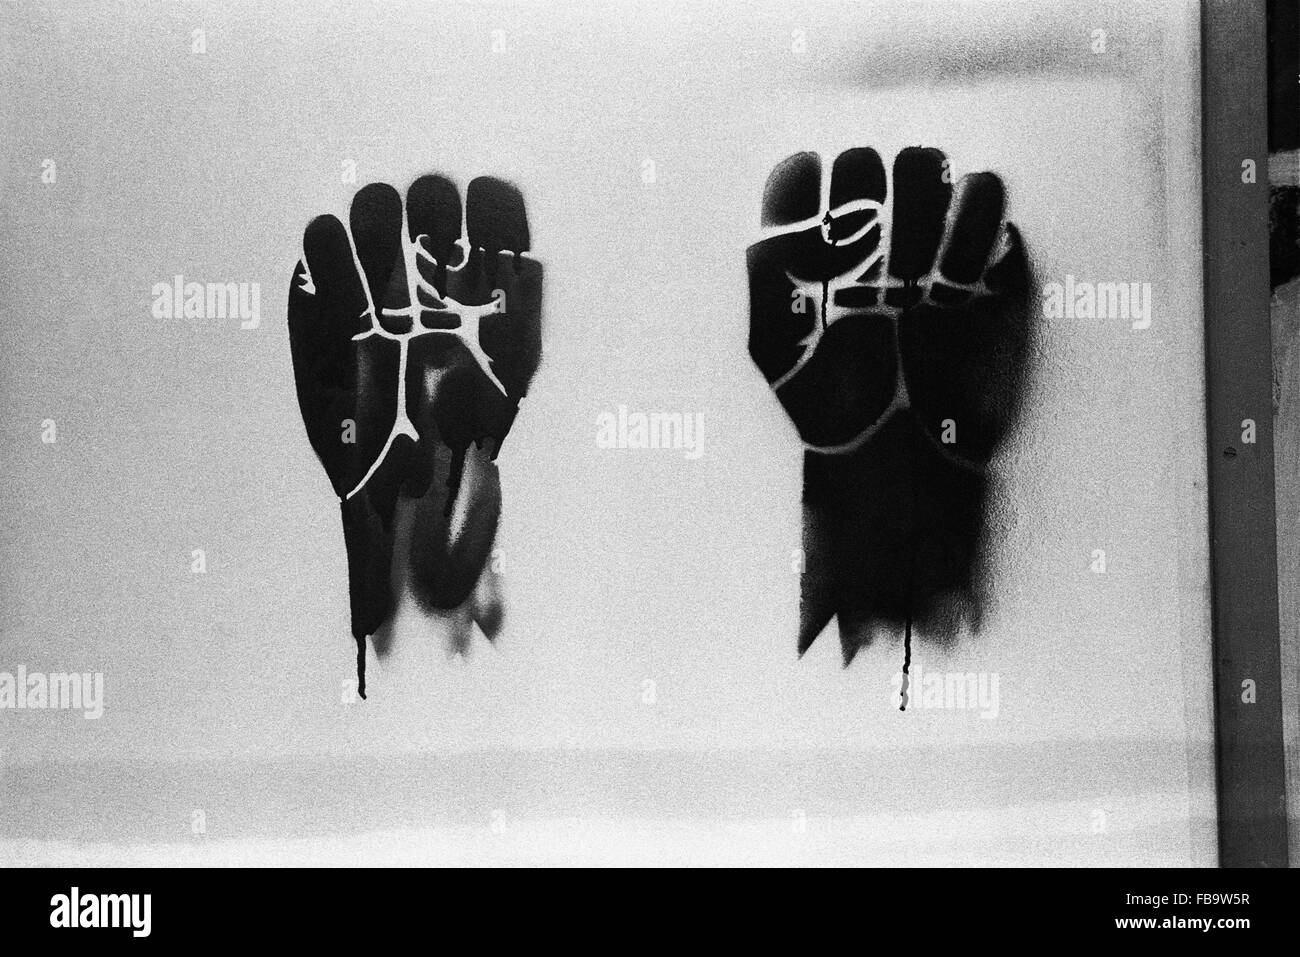 Les événements de 1968. - - Les événements de 1968. - 2 poings : un symbole du mouvement de protestation en 1968. - Philippe Gras / Le Pictorium Banque D'Images